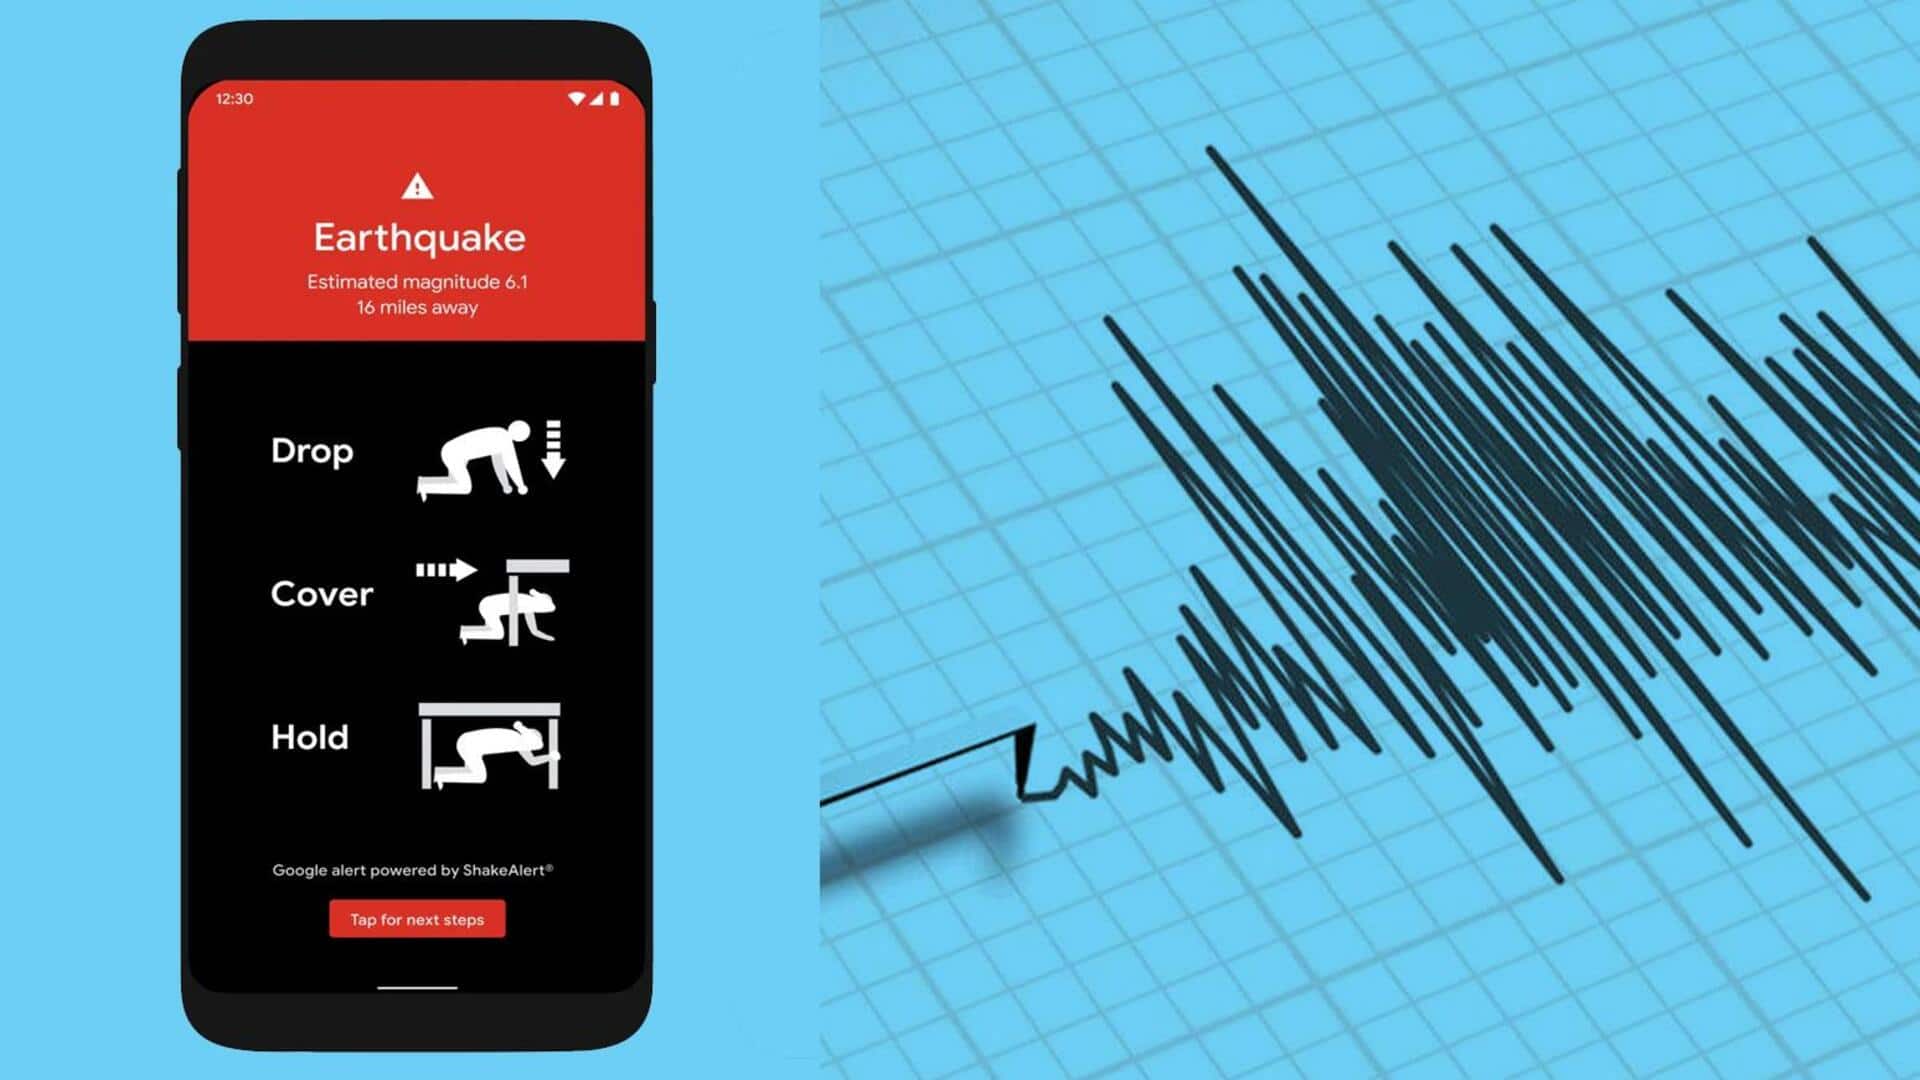 भूकंप से सतर्क रहने के लिए फोन में चालू करें अर्थक्वेक अलर्ट सिस्टम, जानिए तरीका